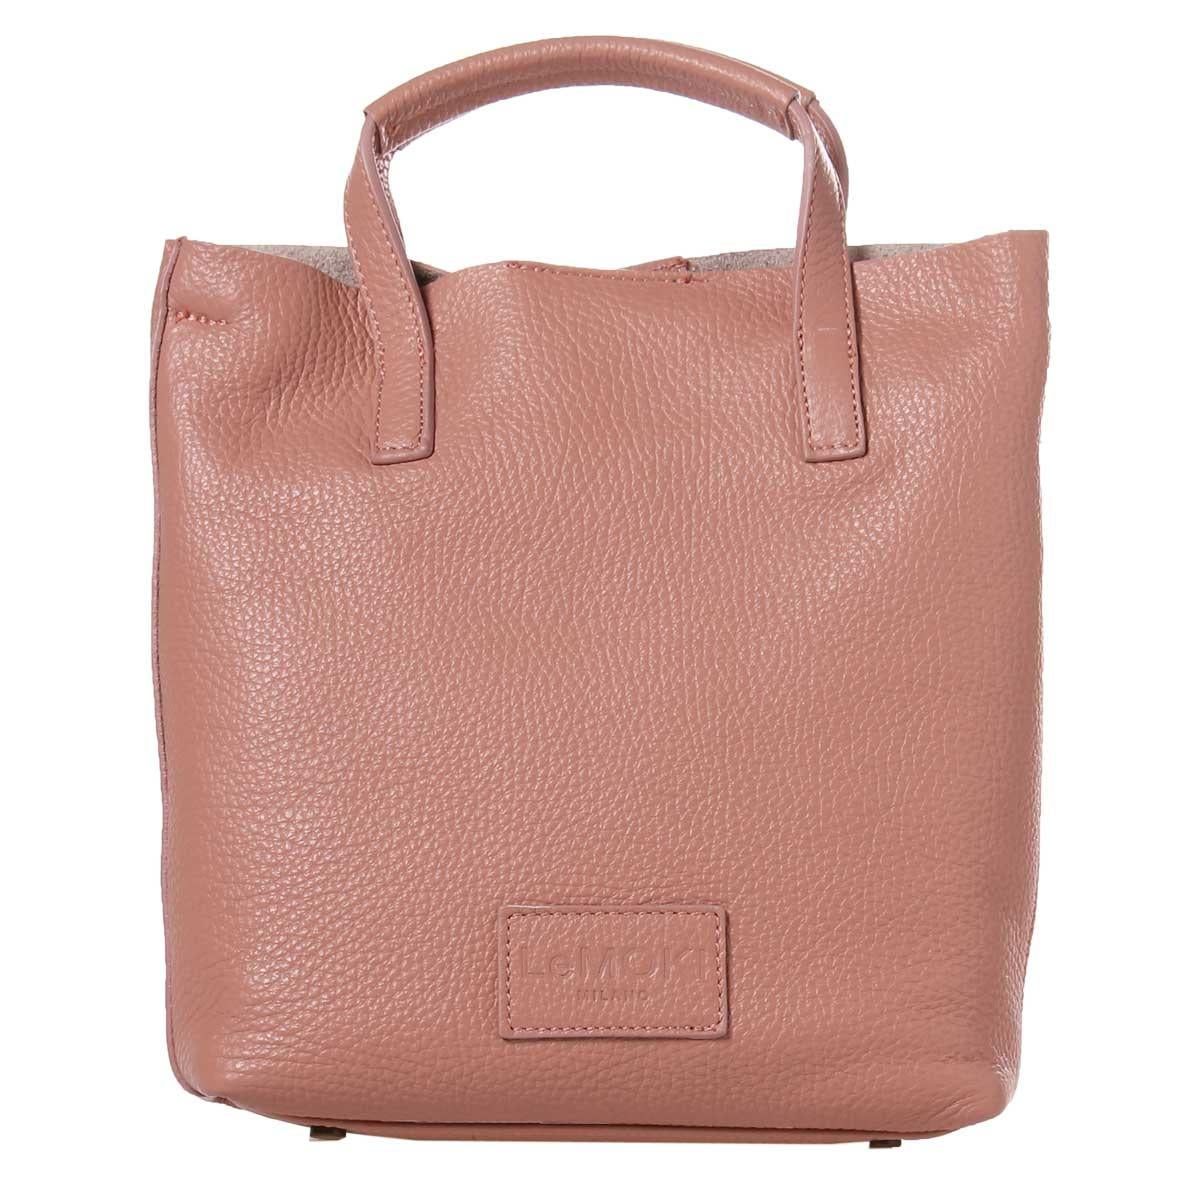 Women's or Men's Pink leather handbag shoulder bag NWOT